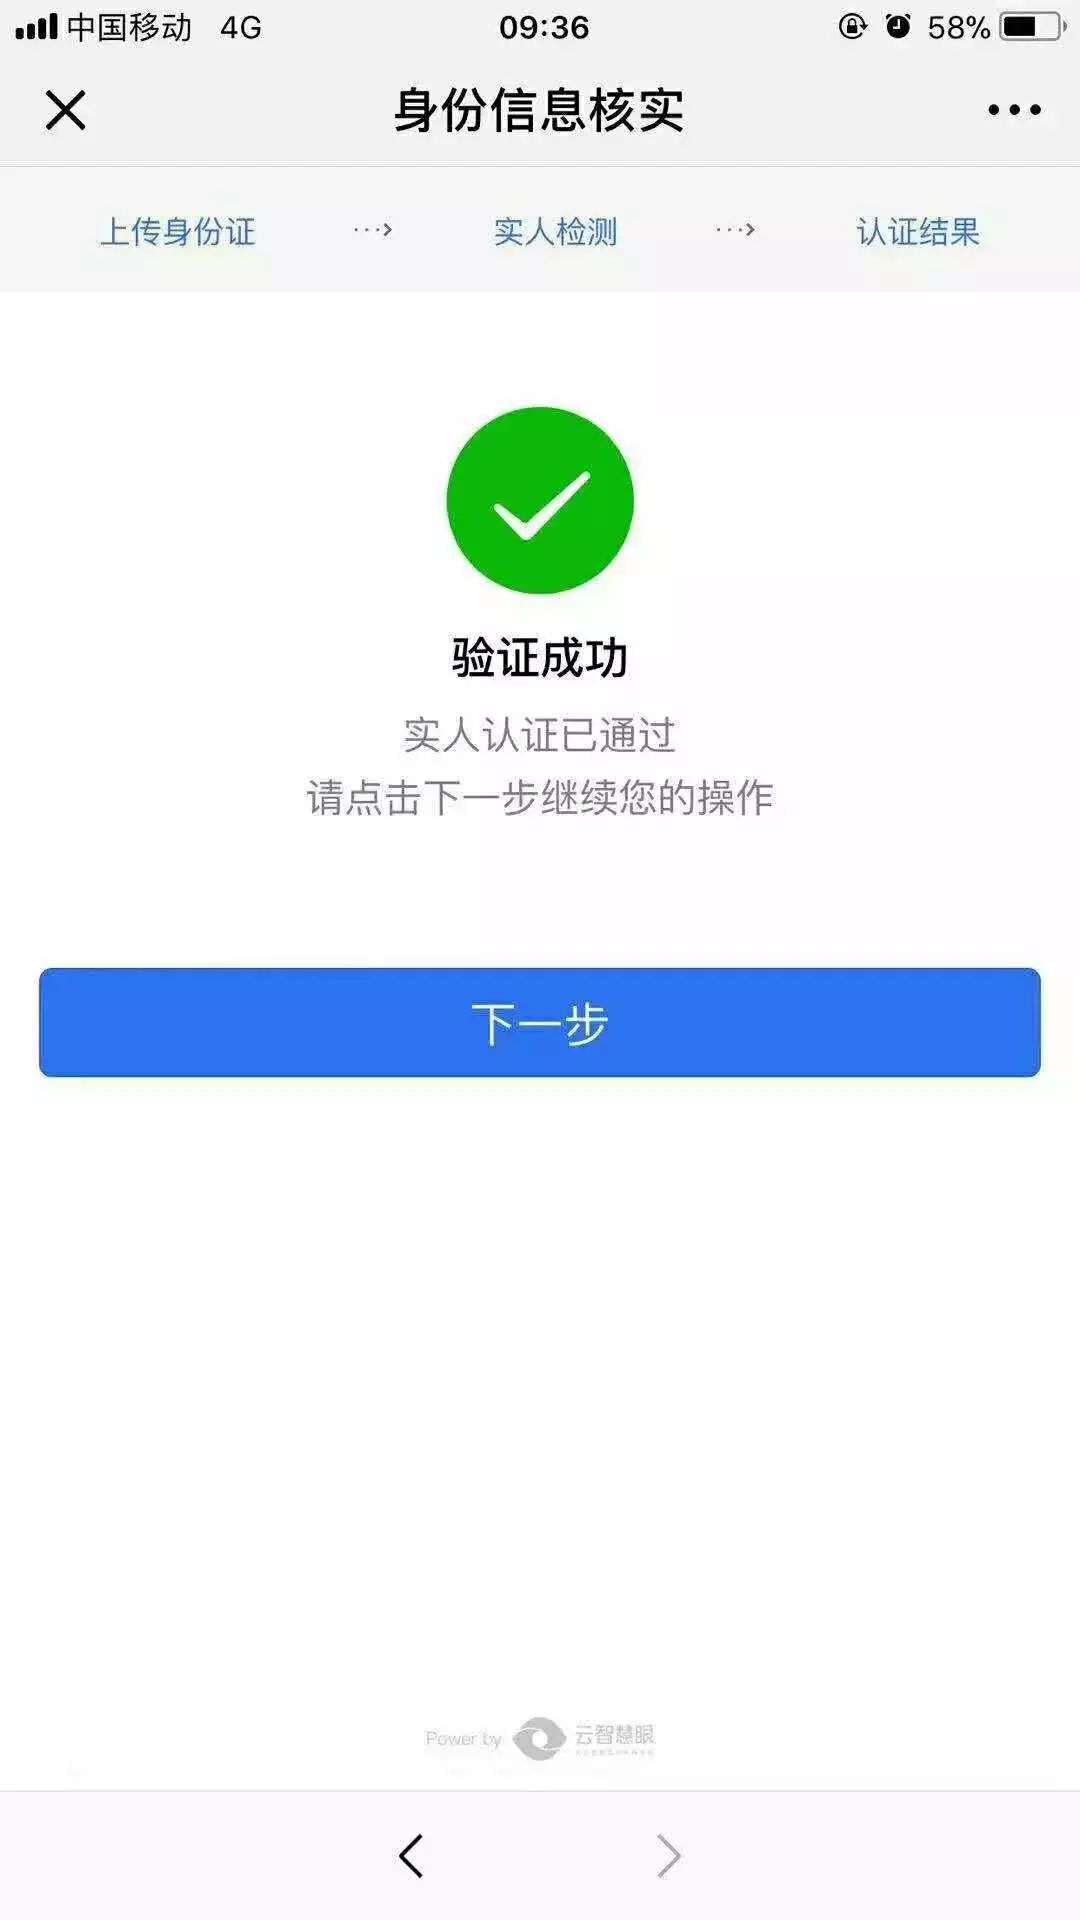 【便民服务】湖南公安服务平台上线,速来ge